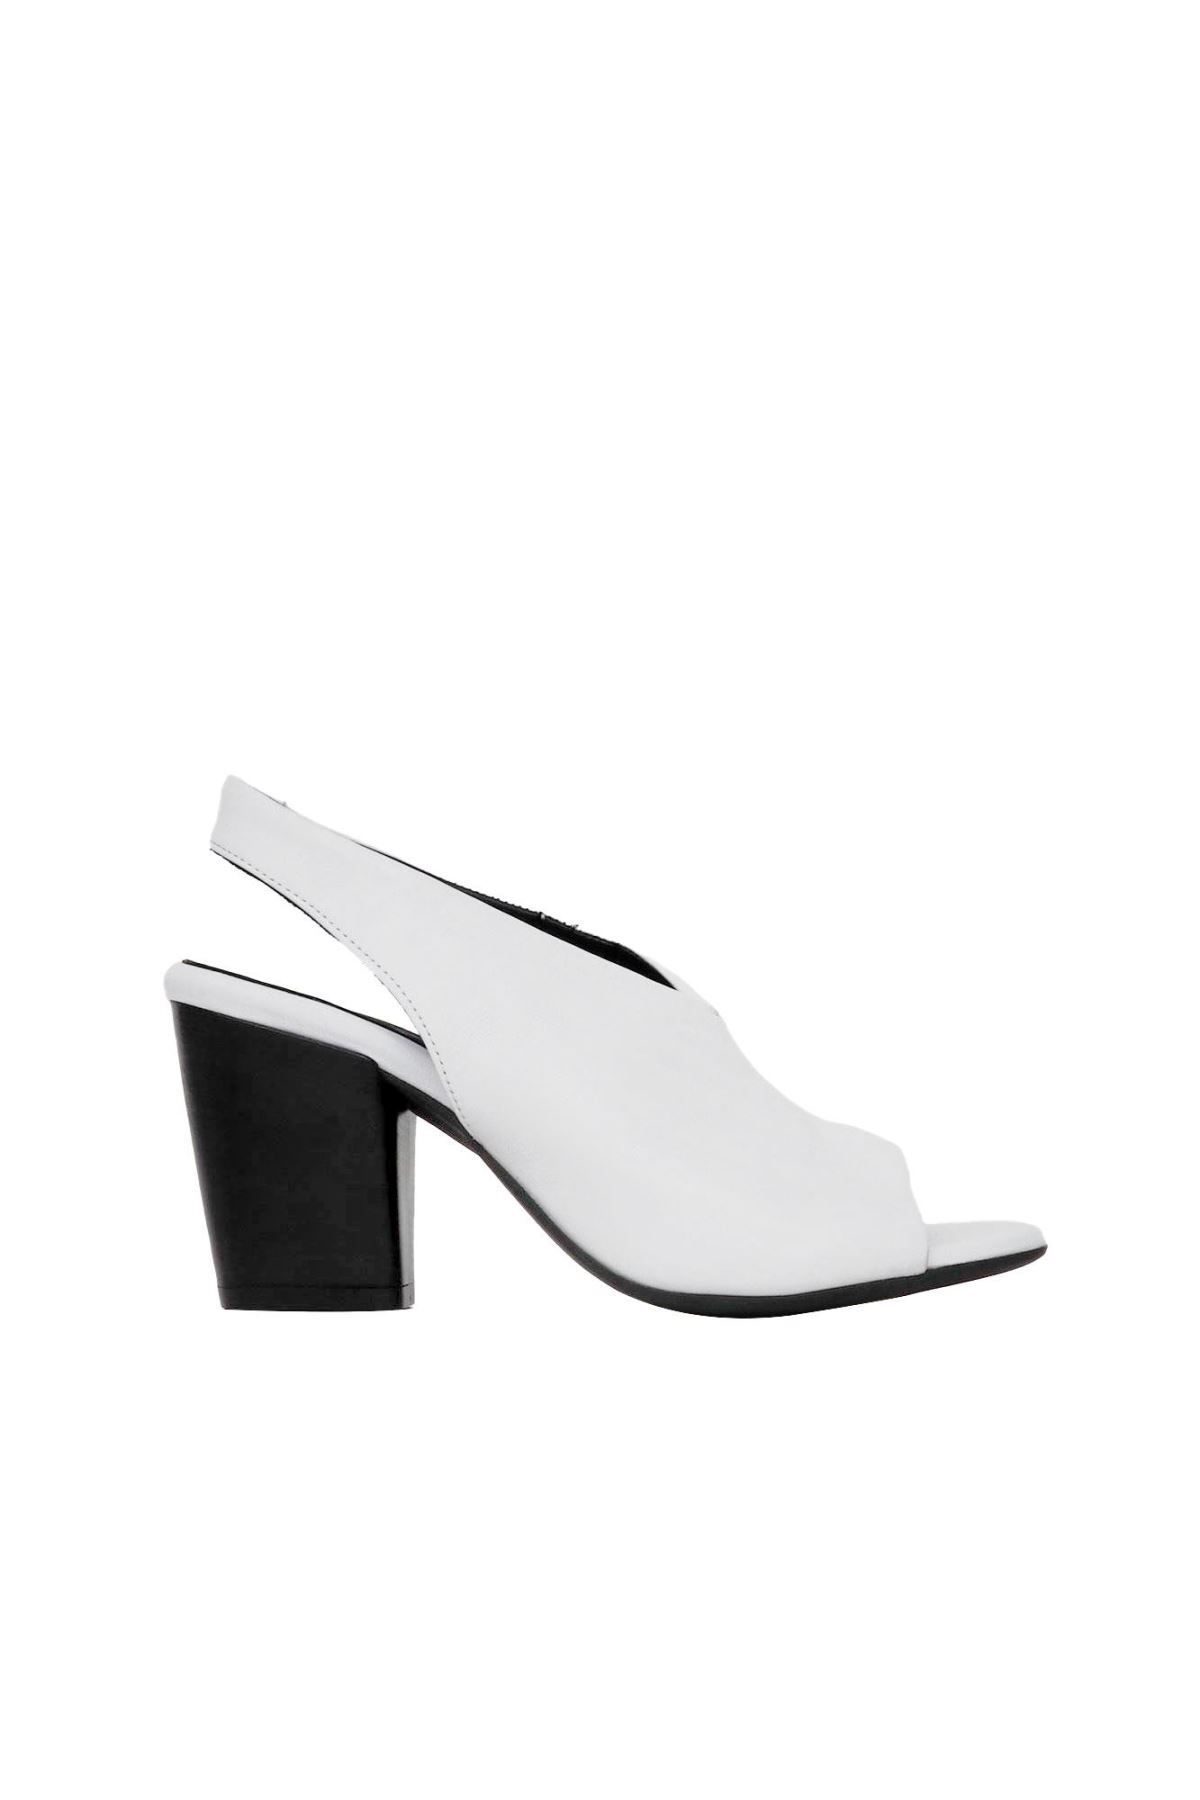 BUENO Shoes Beyaz Deri Kadın Topuklu Sandalet